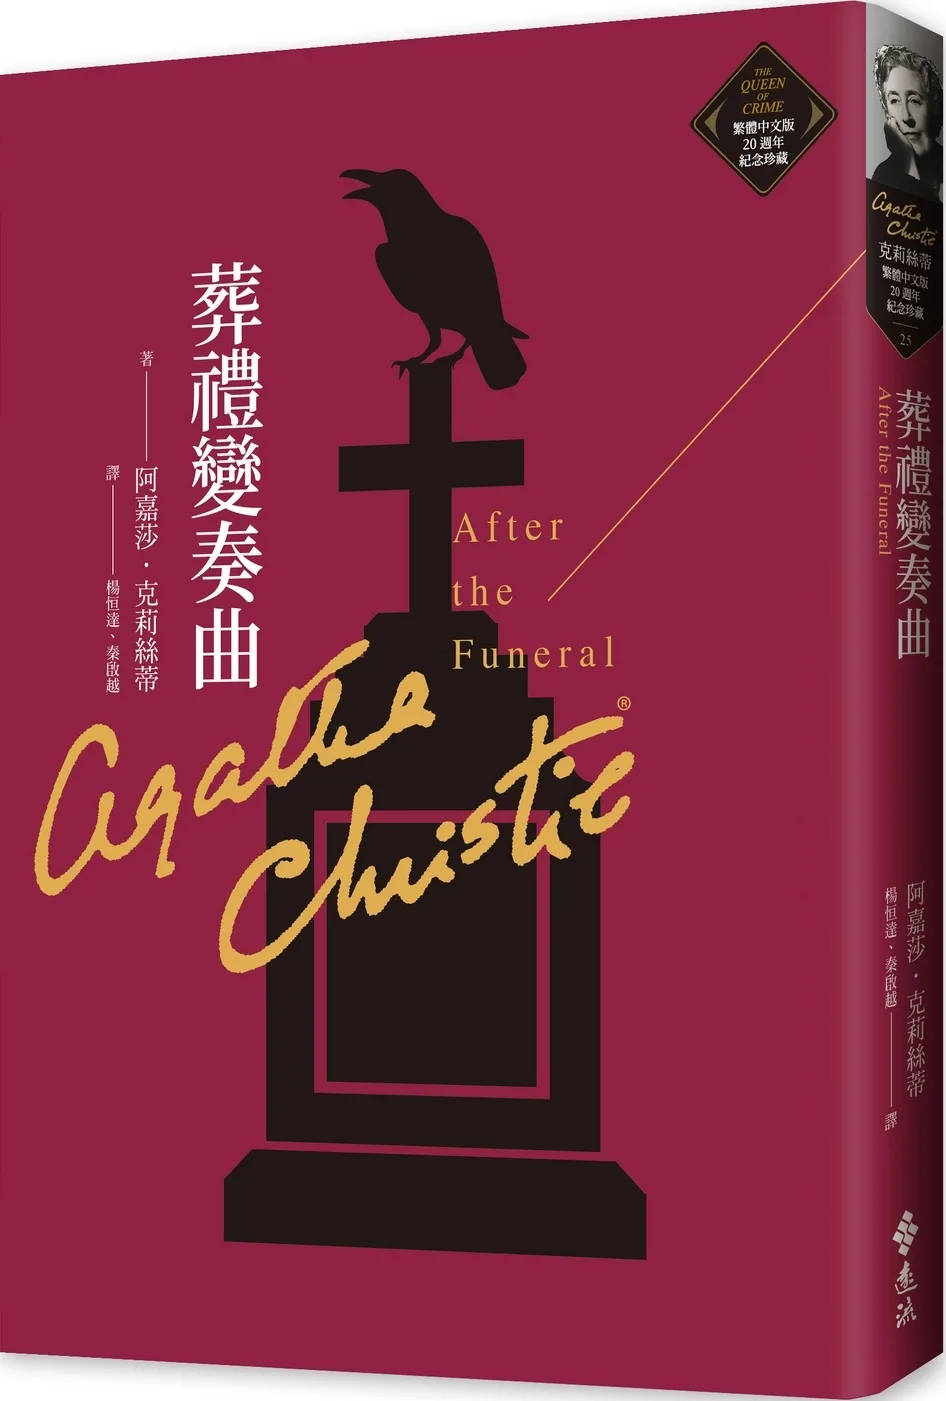 克莉絲蒂繁體中文版20週年紀念珍藏25-38